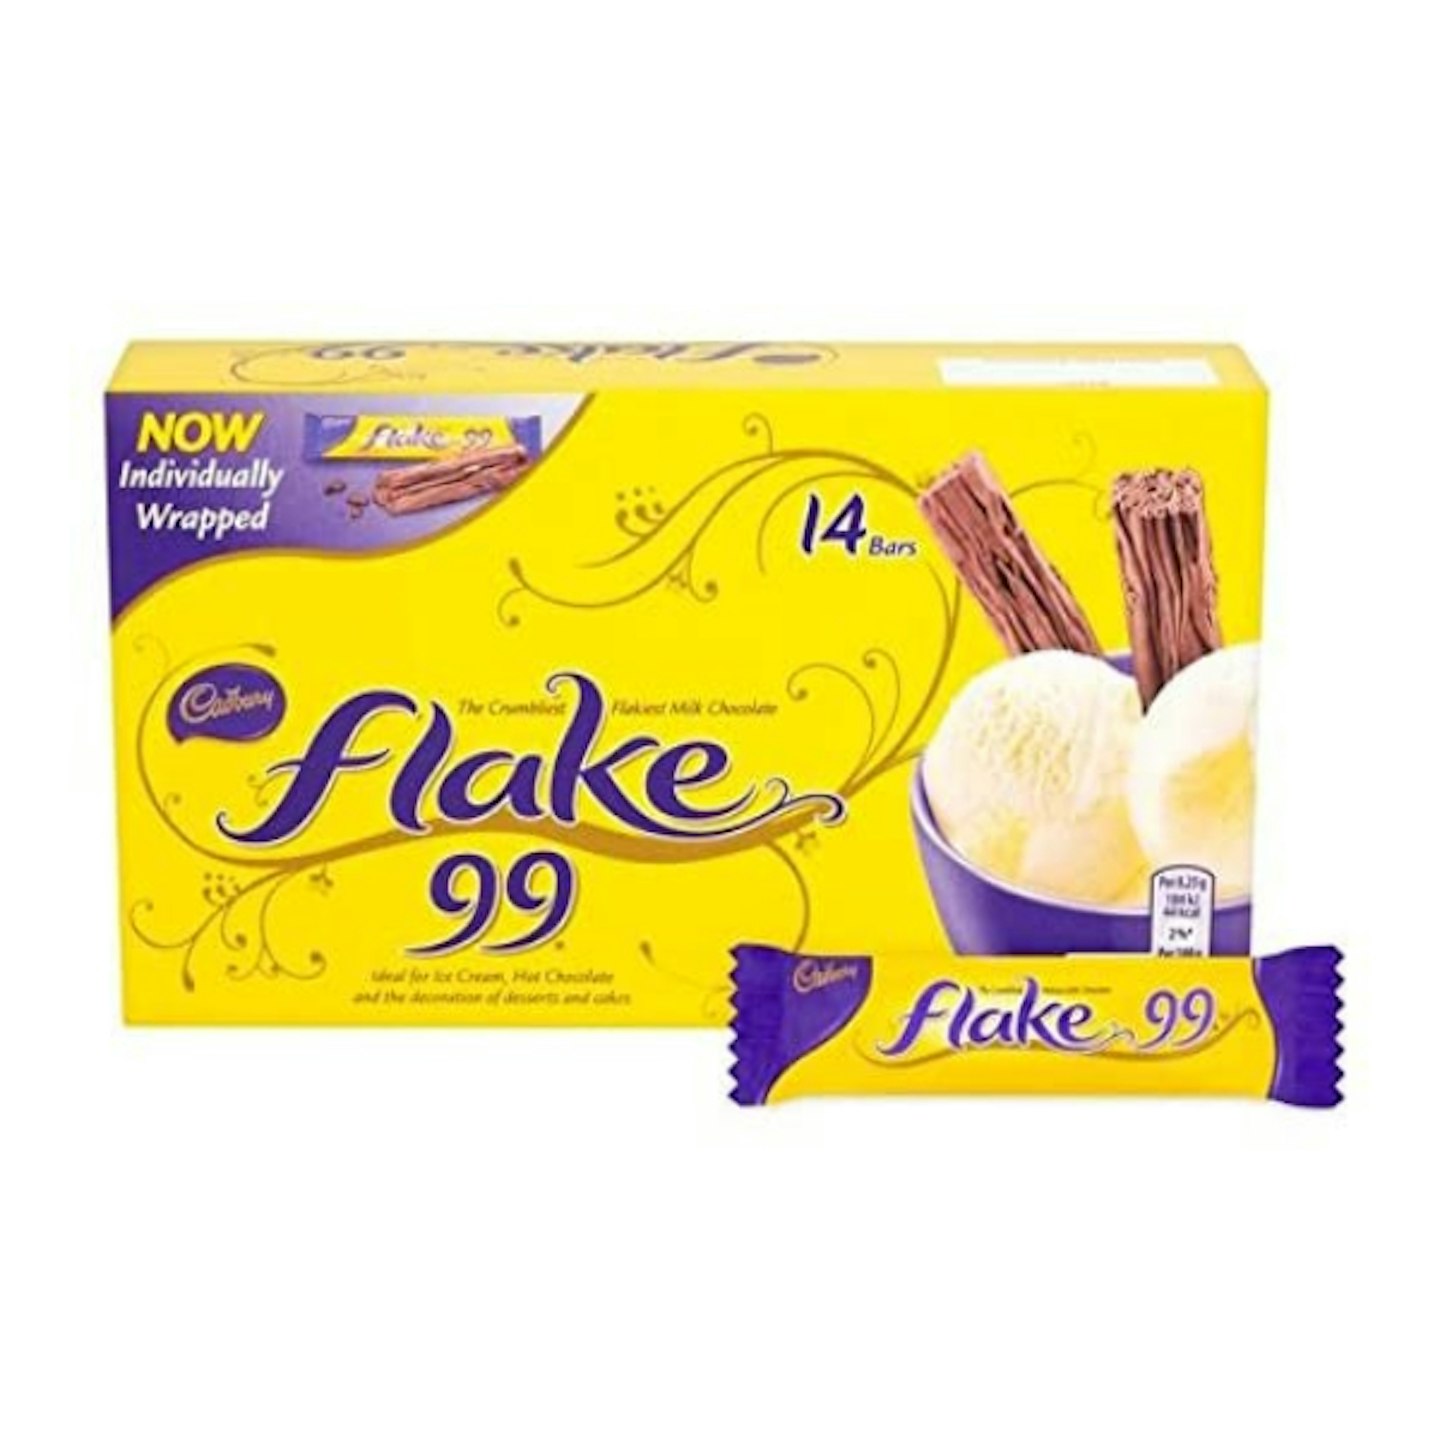 Flake bar